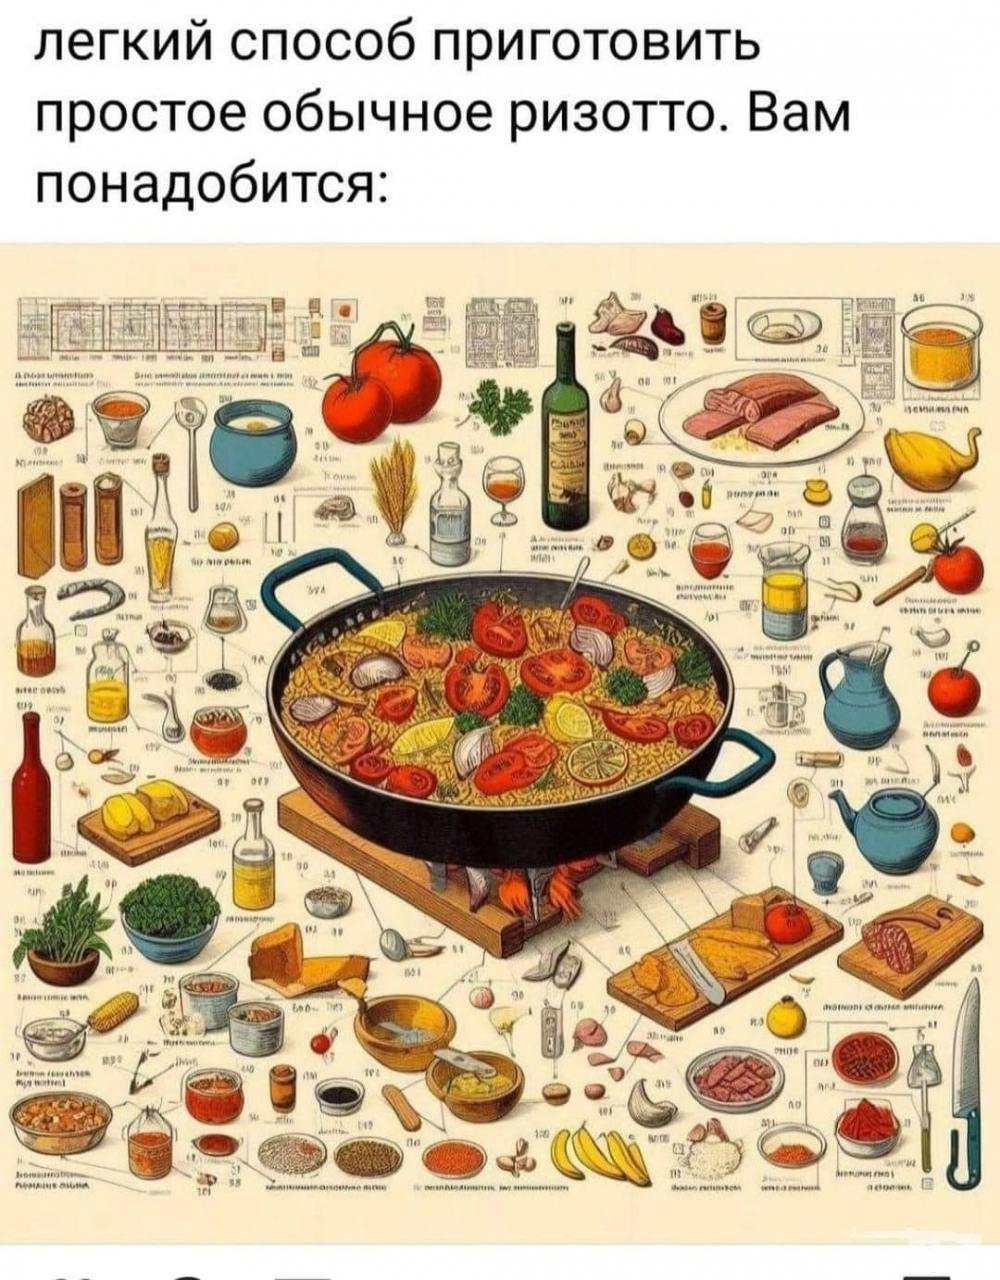 158867 - Закуски на огне (мангал, барбекю и т.д.) и кулинария вообще. Советы и рецепты.